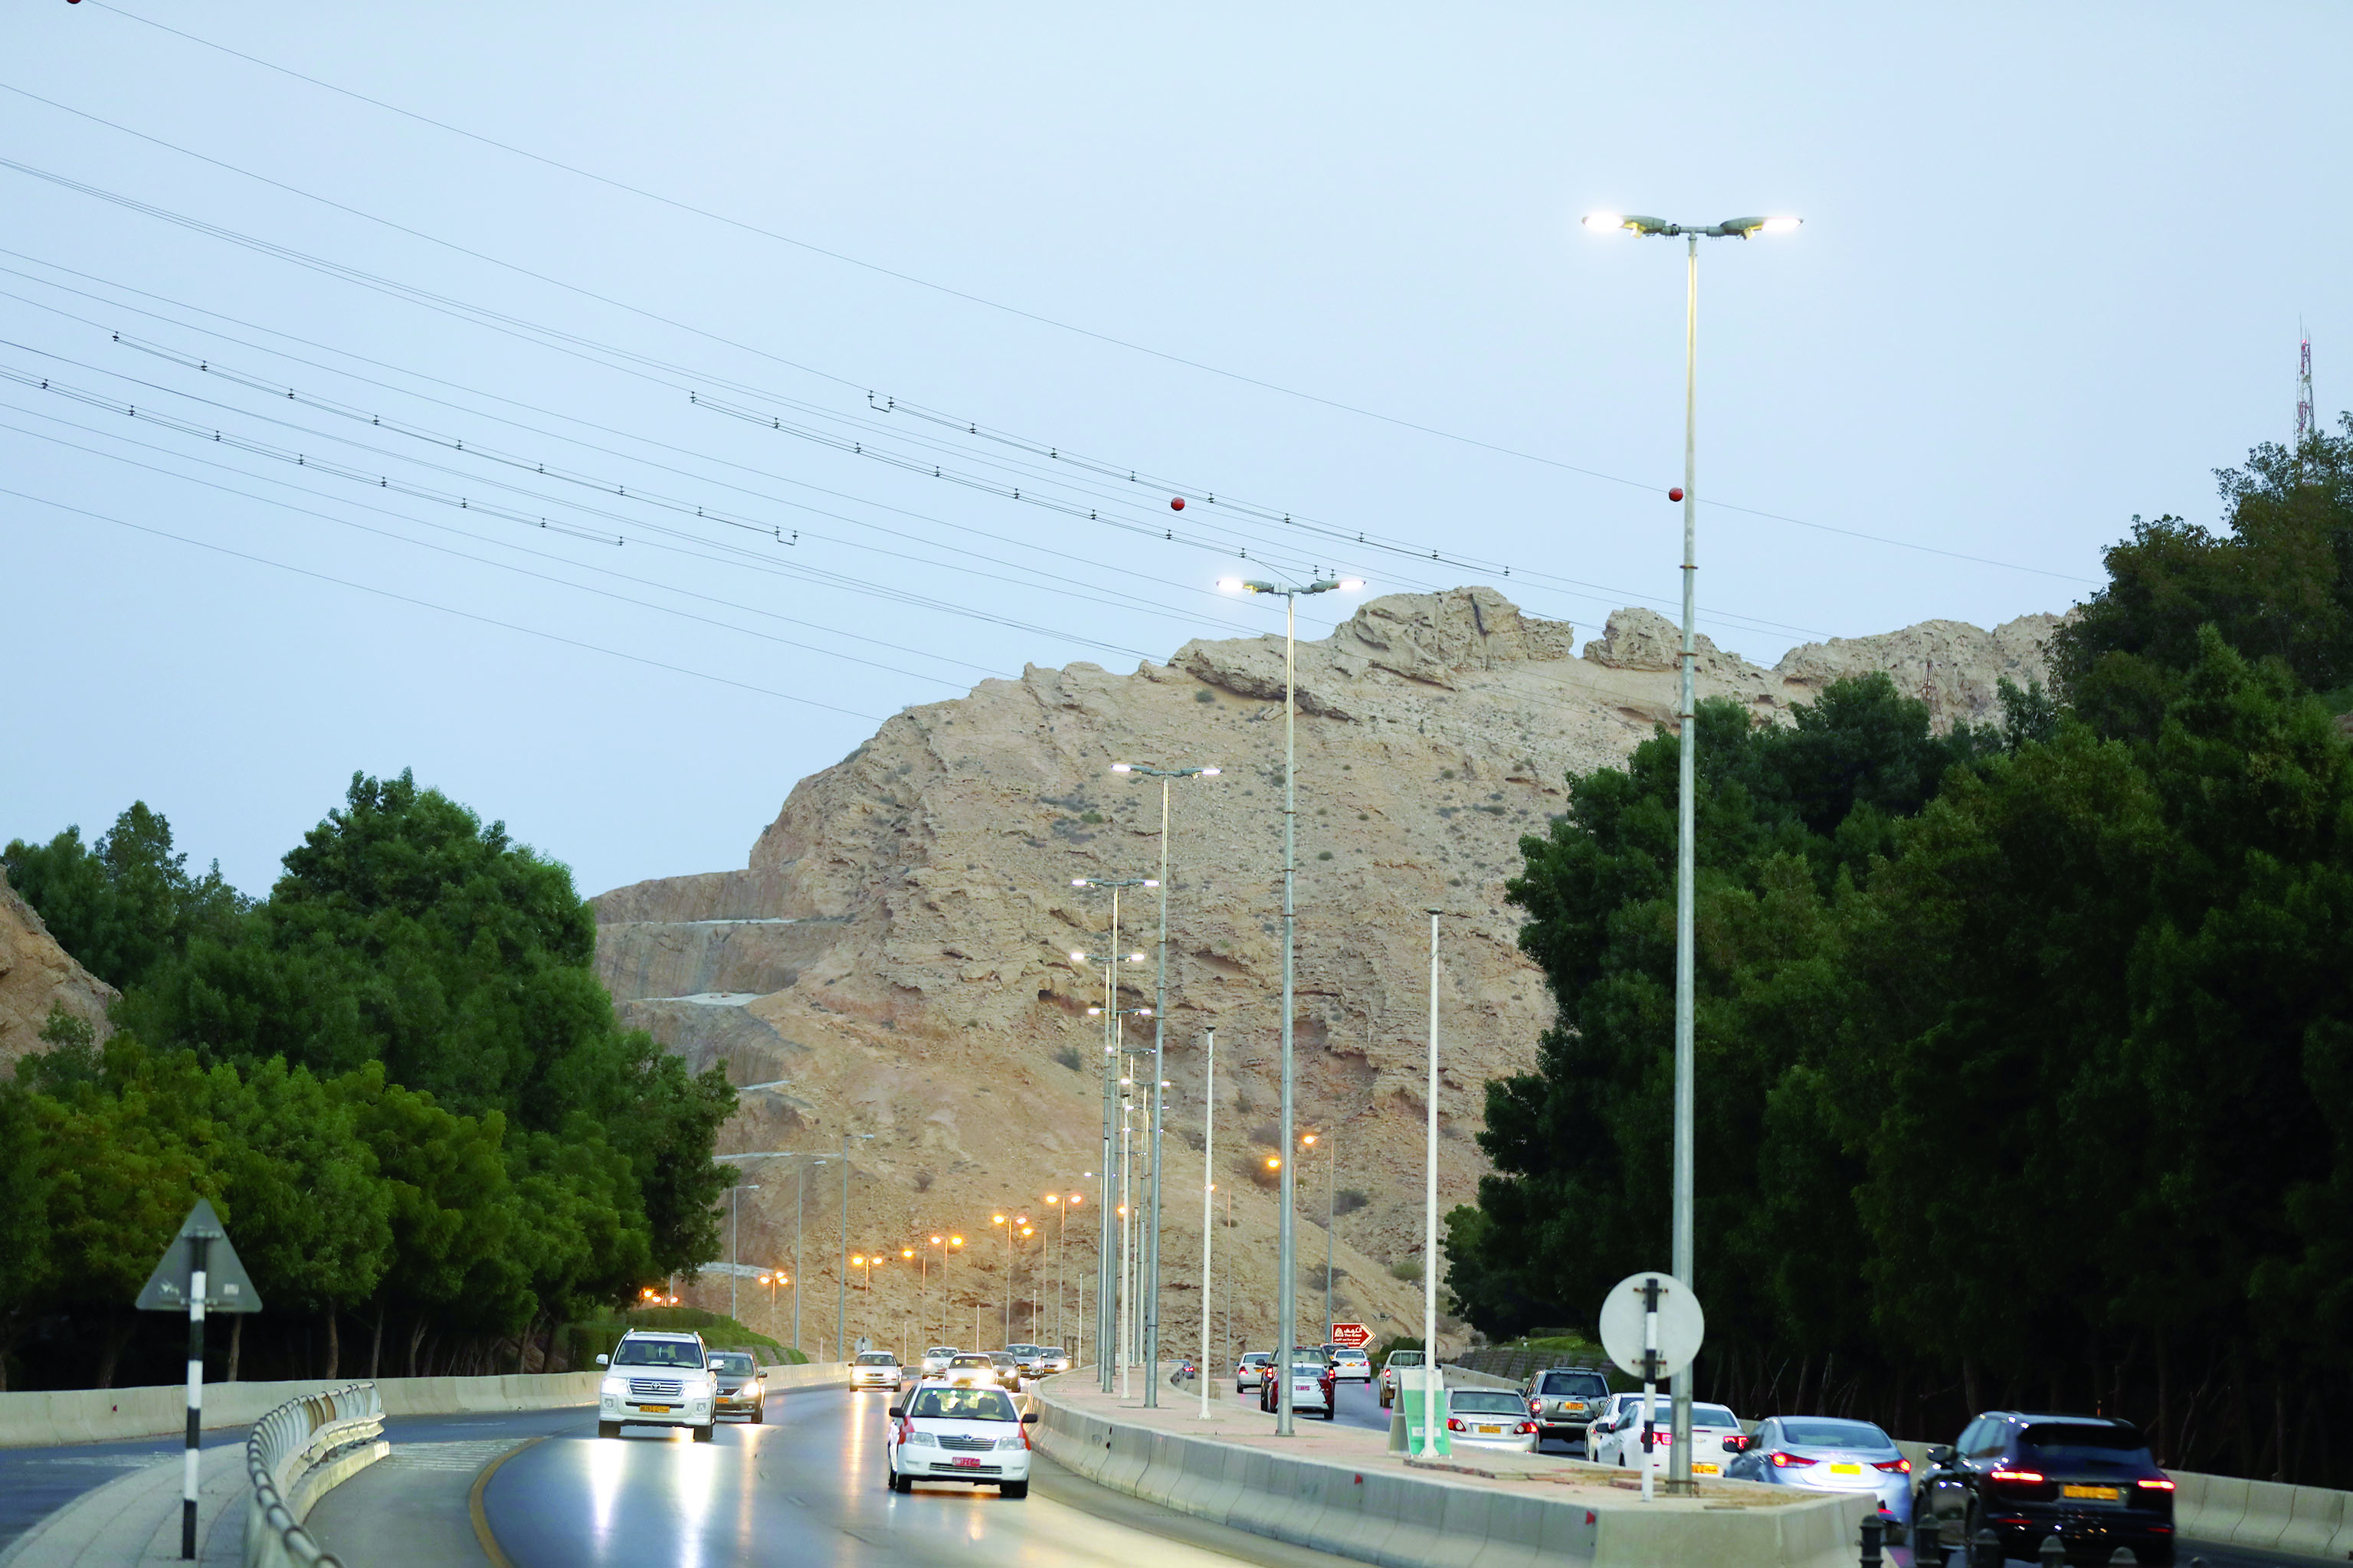 بلدية مسقط تواصل مشروع استبدال الإنارة بالـ"LED" إنارة ذكية تغطي الطرق والجسور